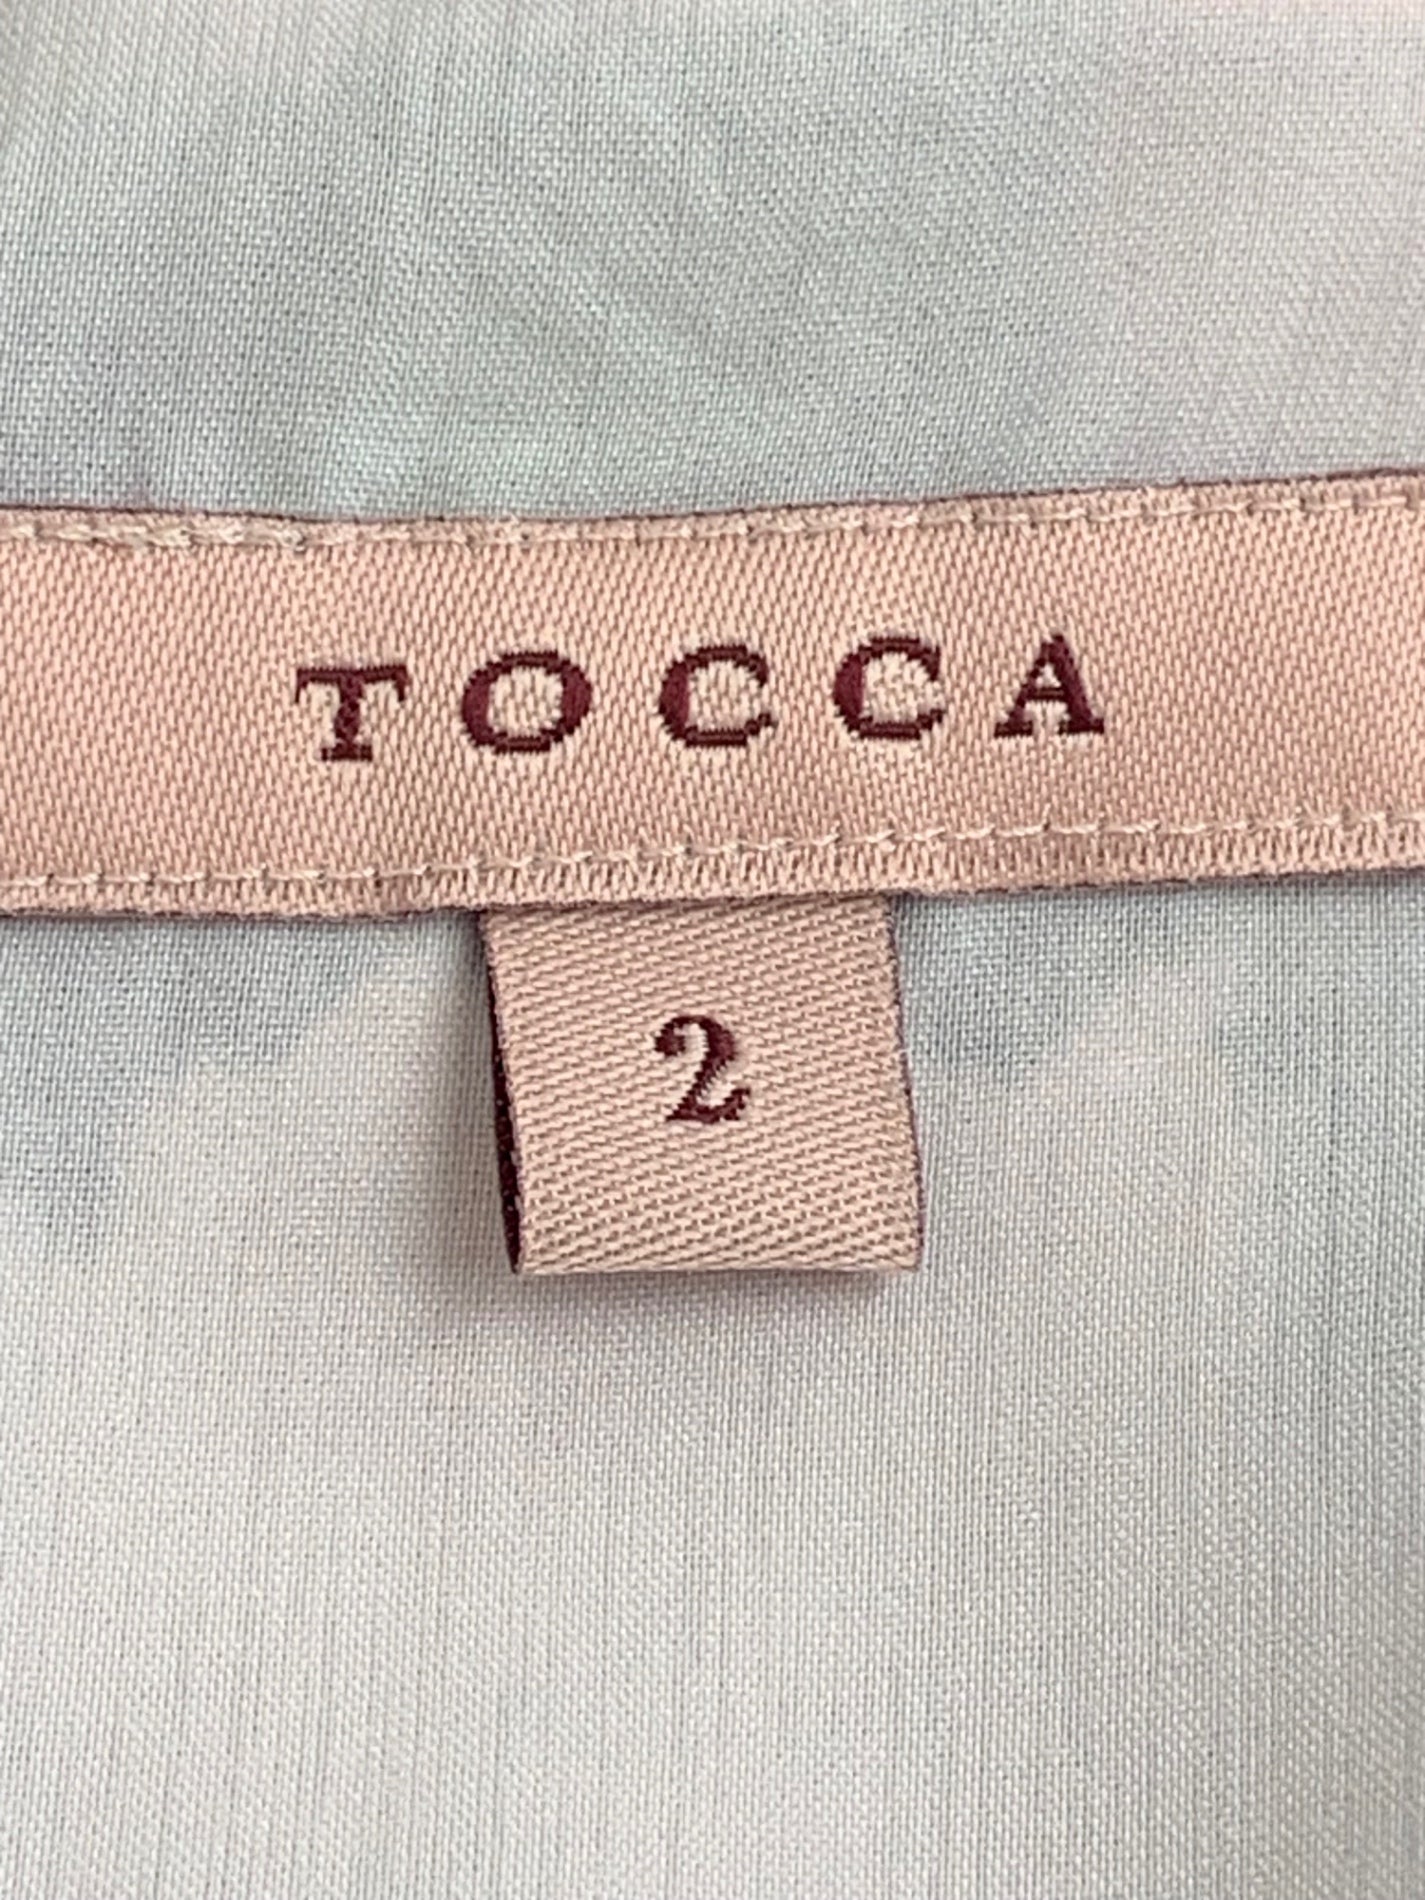 トッカ ROSA LONG DRESS ロングドレス OPTOIM0600 ワンピース ネイビー IT8KBKR2N5ND